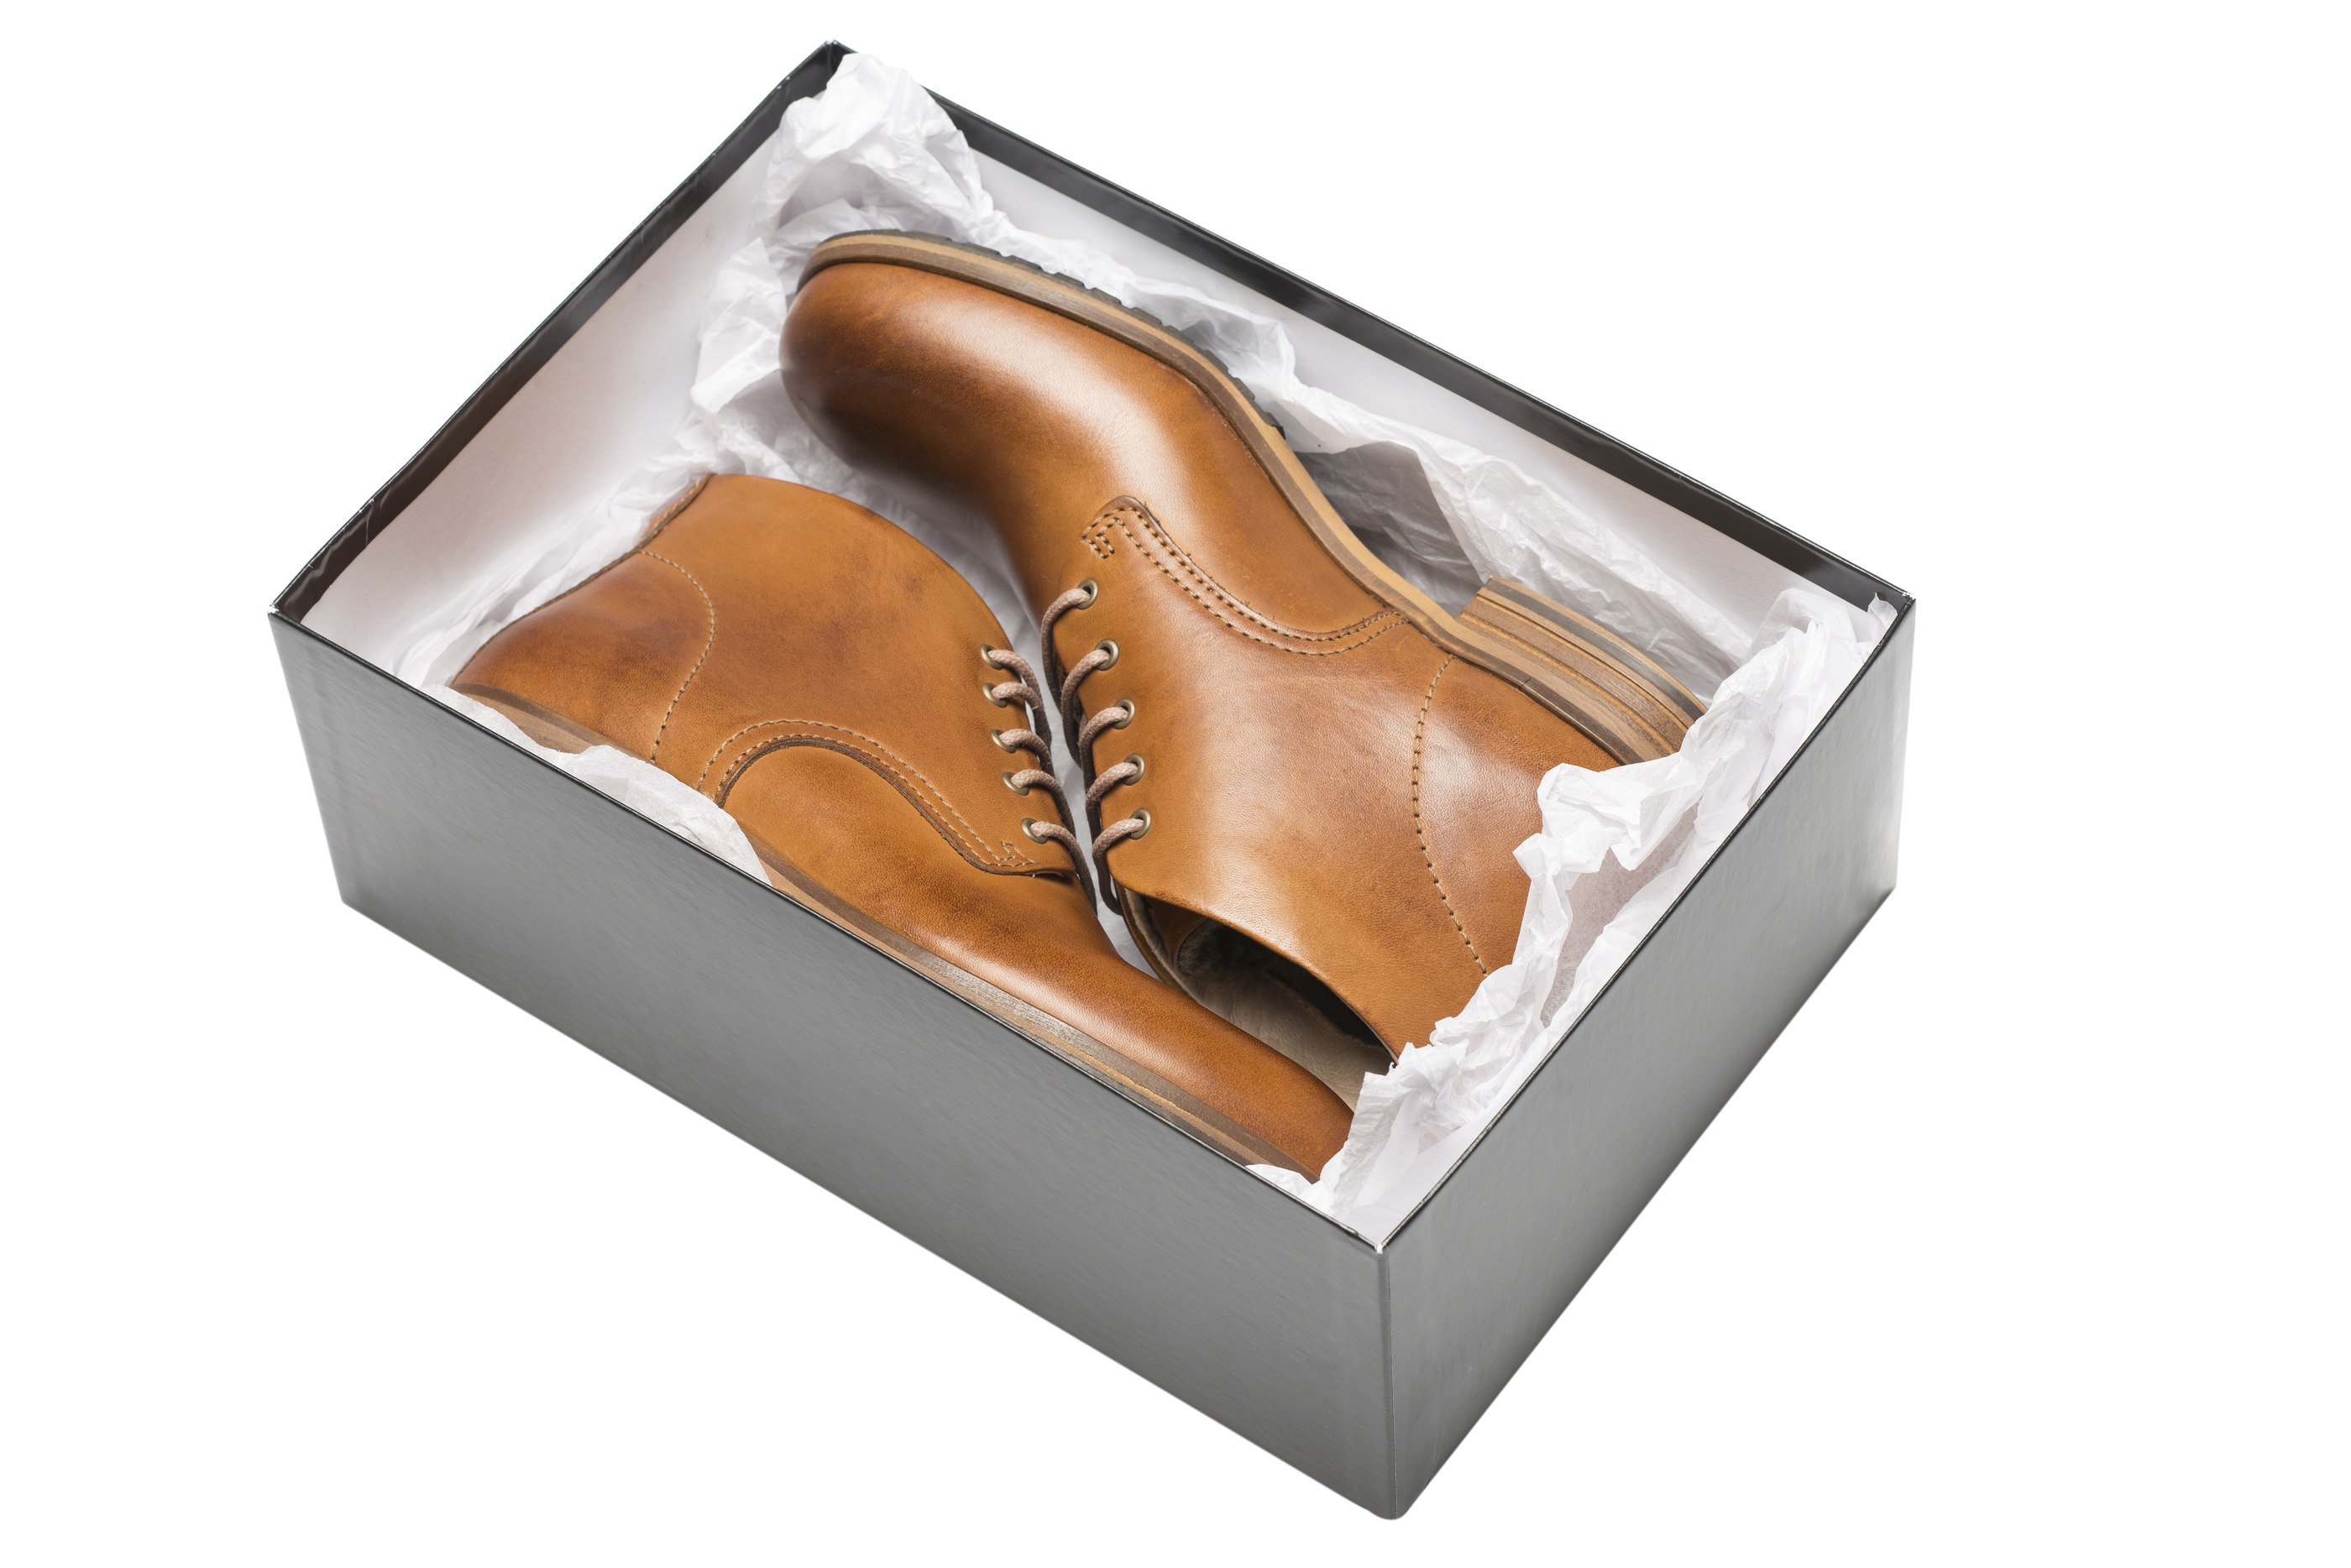 Коробка для обуви